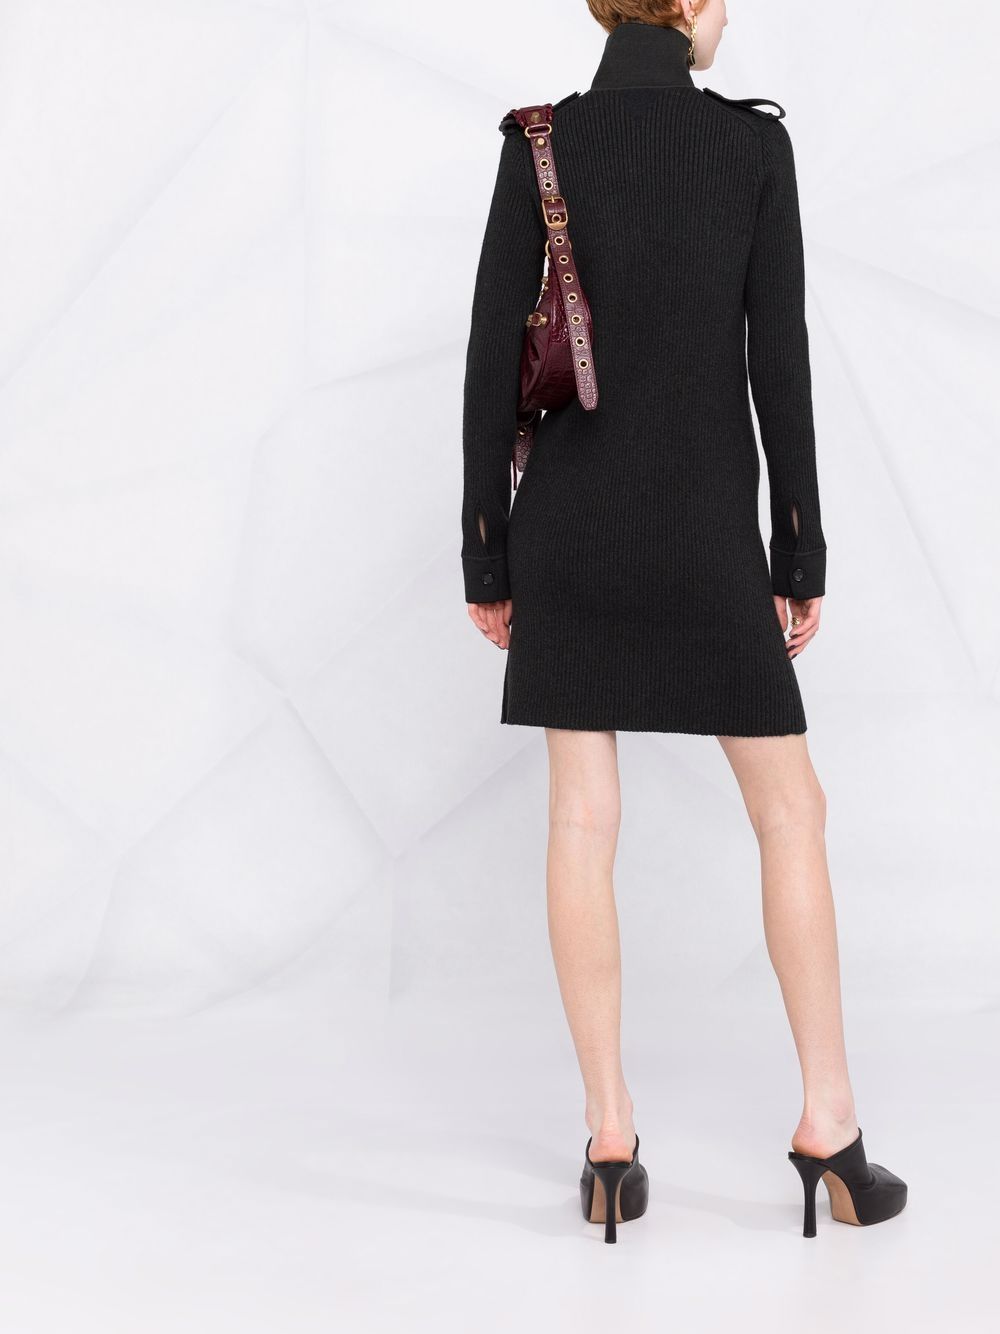 фото Bottega veneta трикотажное платье в рубчик с высоким воротником